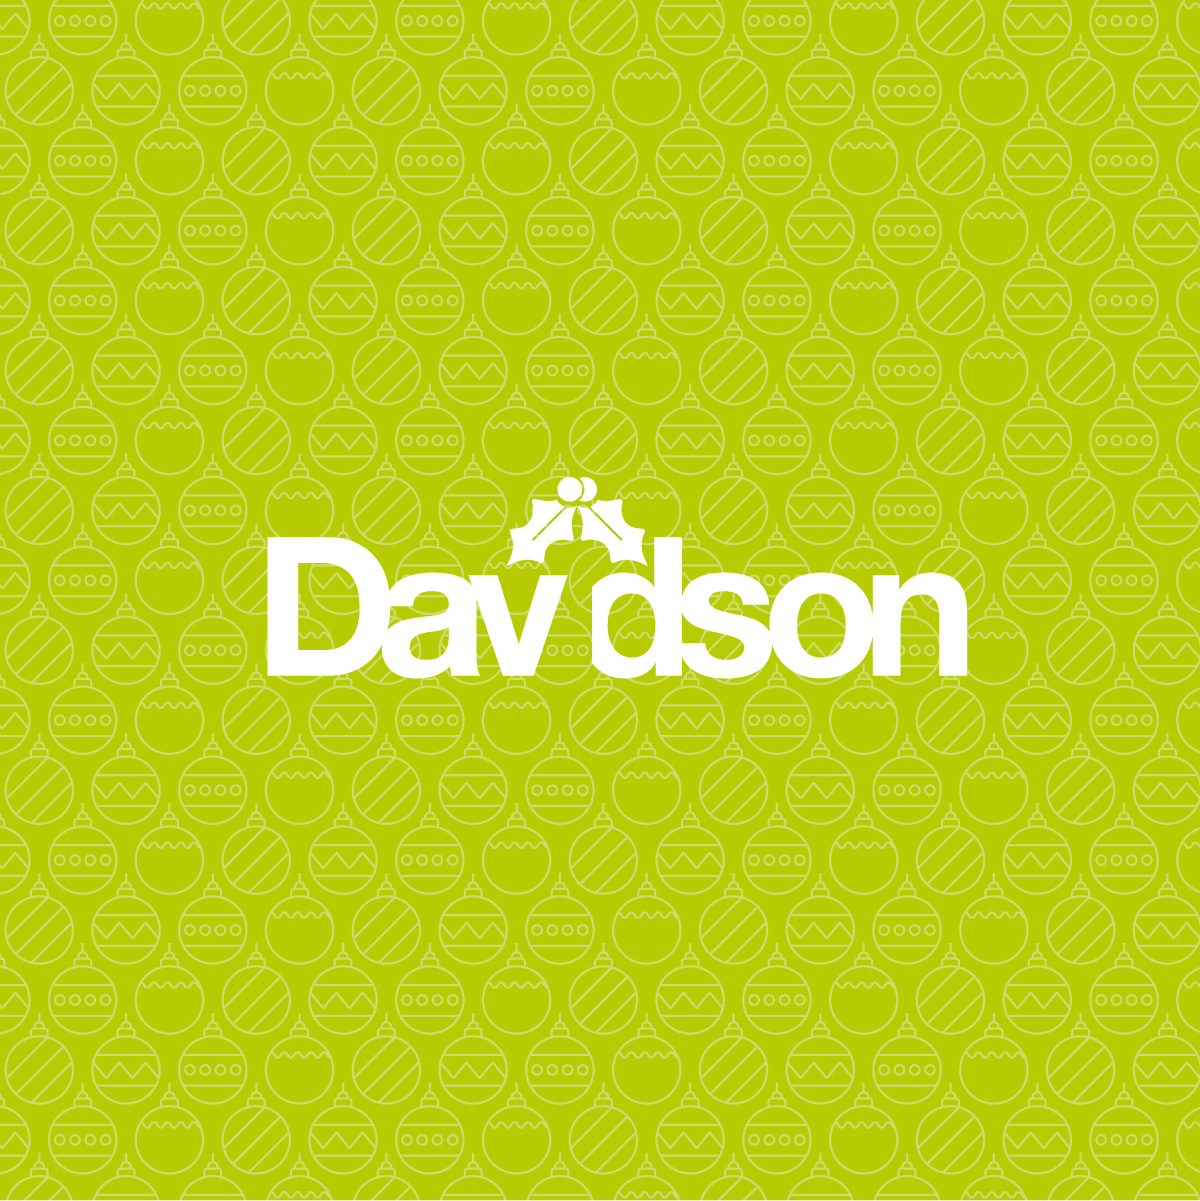 Davidson Xmas Logo